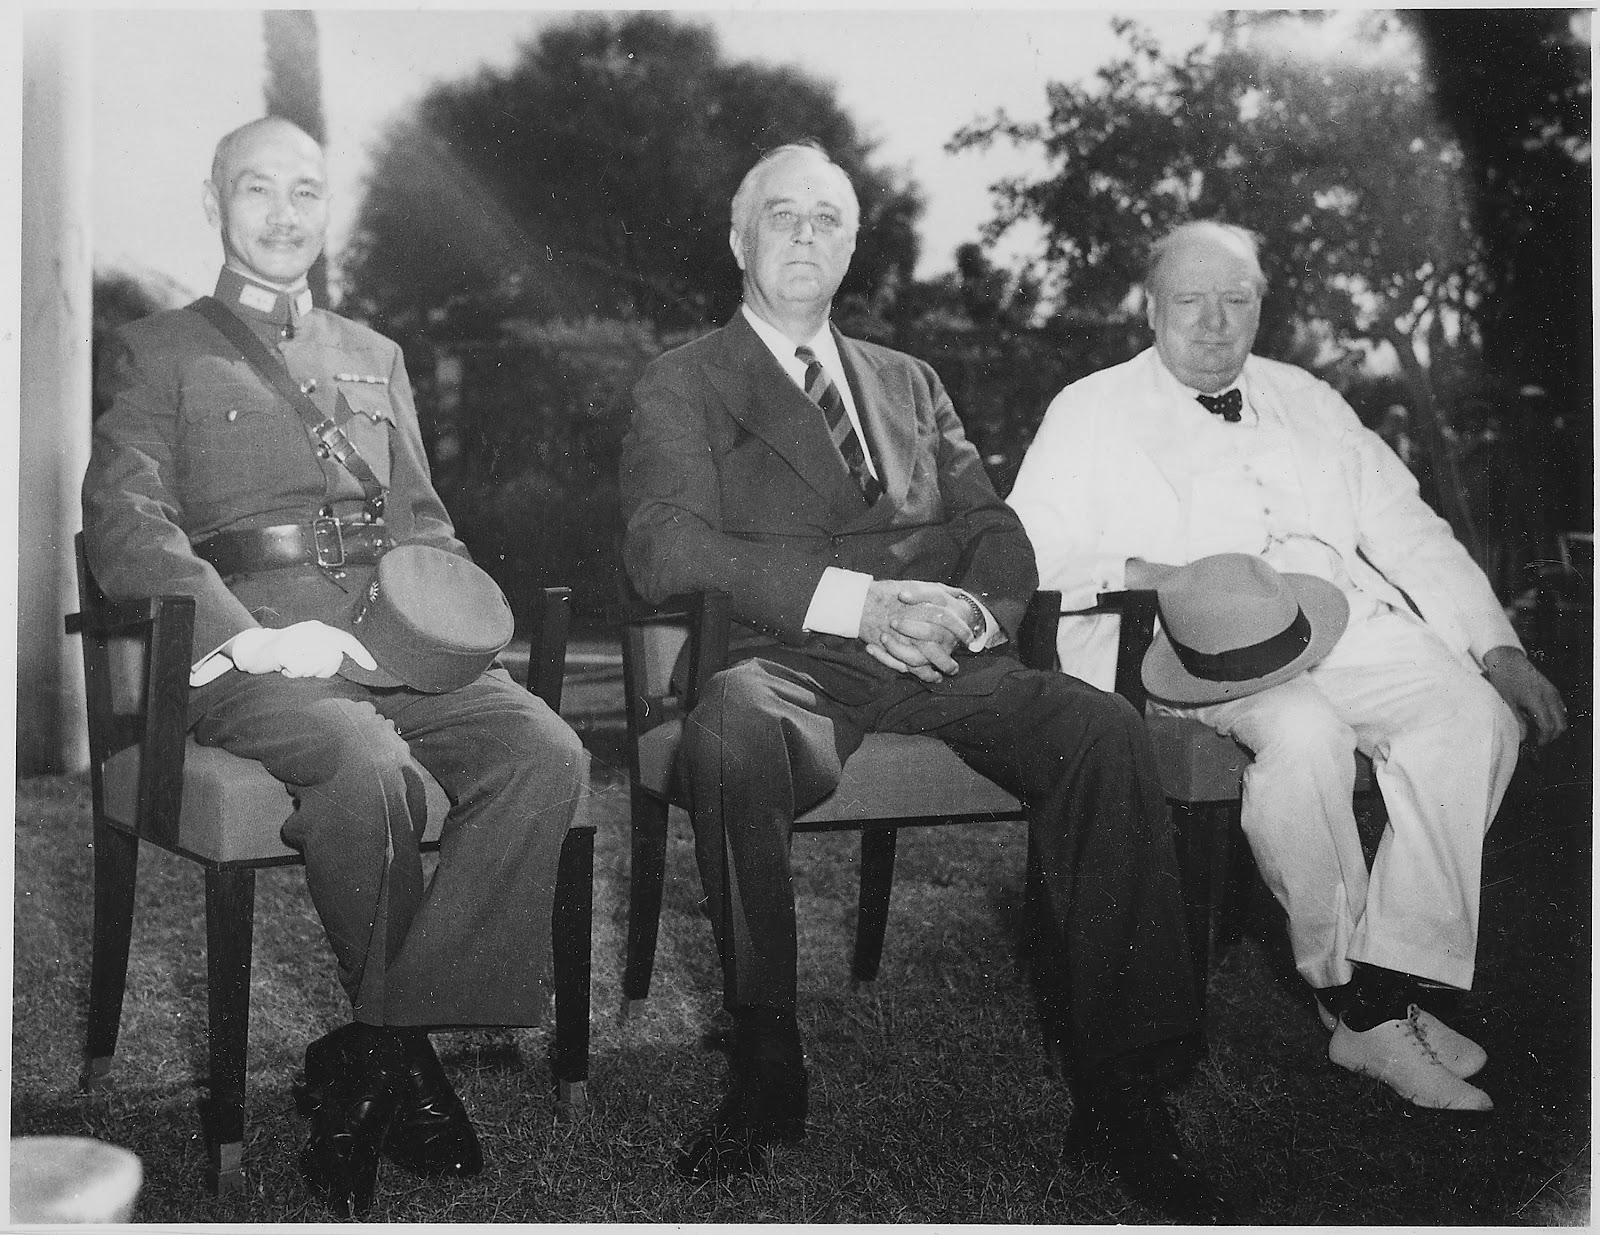 カイロ会談で中華民国の蒋介石とアメリカのルーズベルト大統領とイギリスのチャーチル首相が並んで座っている